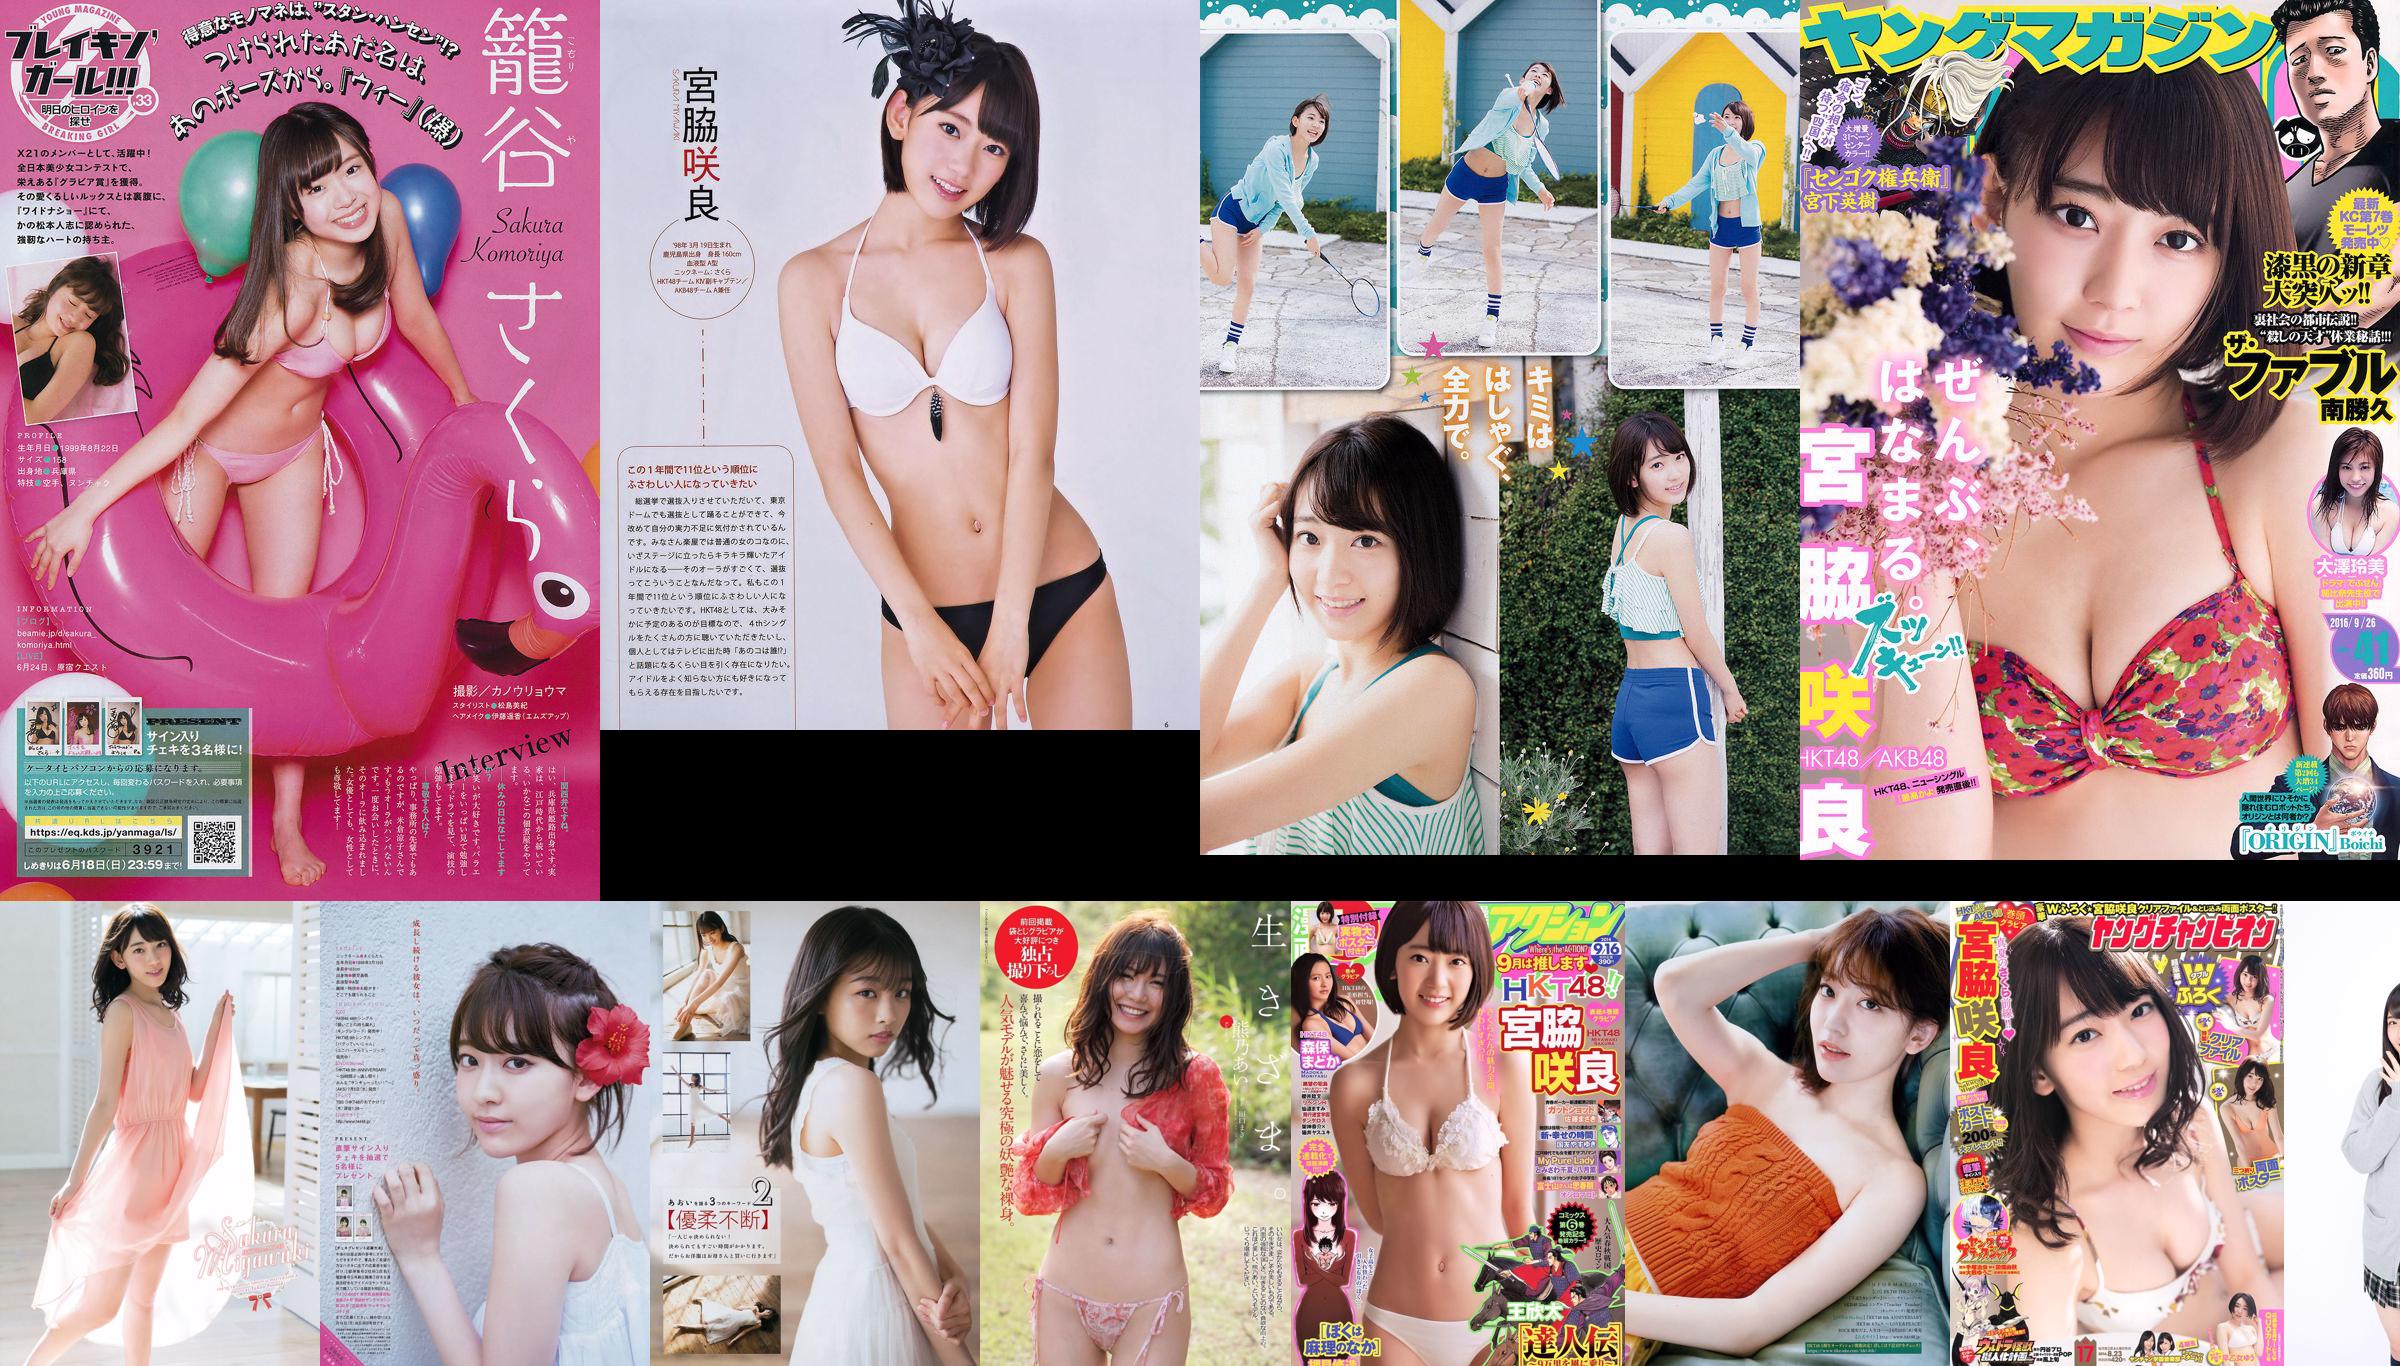 Sakura Miyawaki Haruka Kodama Madoka Moriyasu Mio Tomonaga Sae Kurihara [Weekly Young Jump] 2014 No.50 Photographie No.8b26fc Page 8